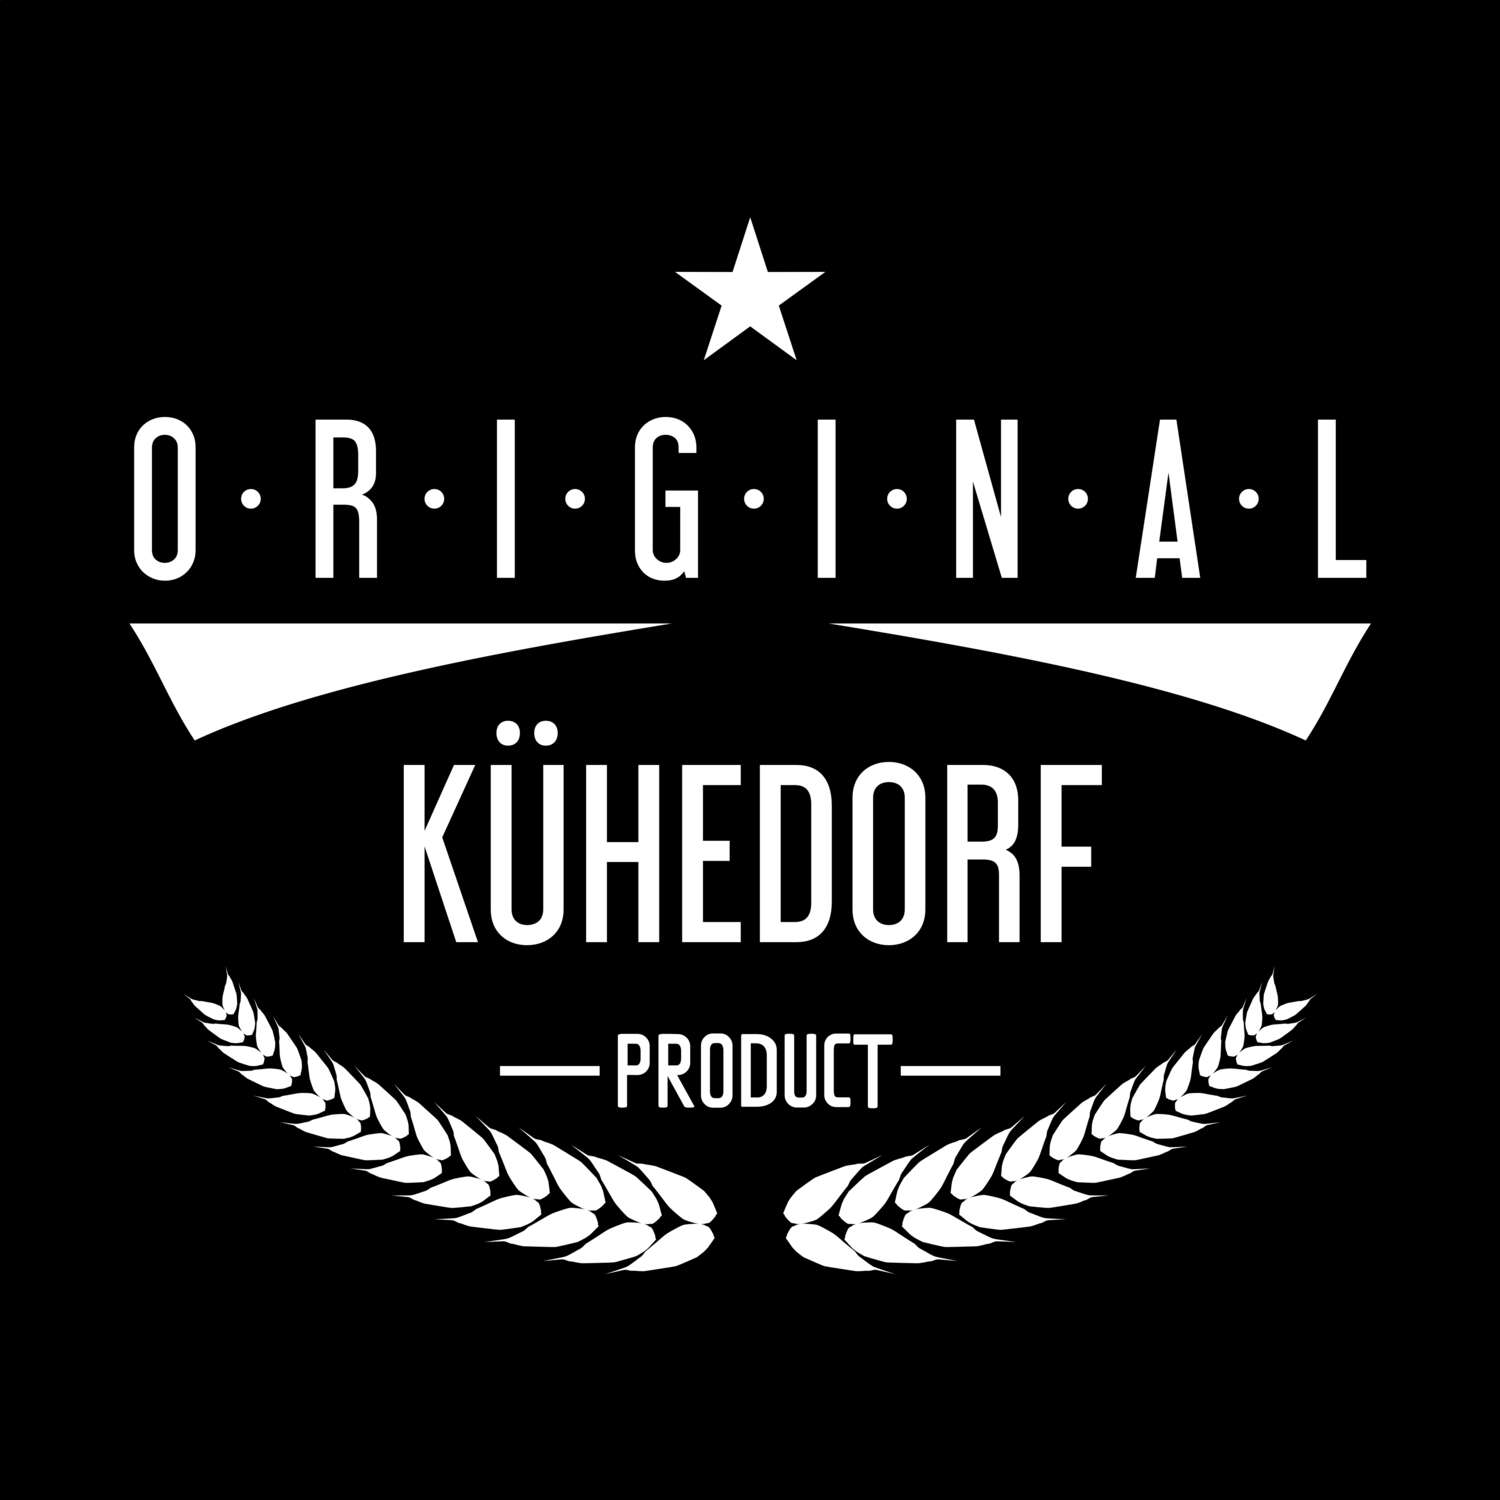 Kühedorf T-Shirt »Original Product«